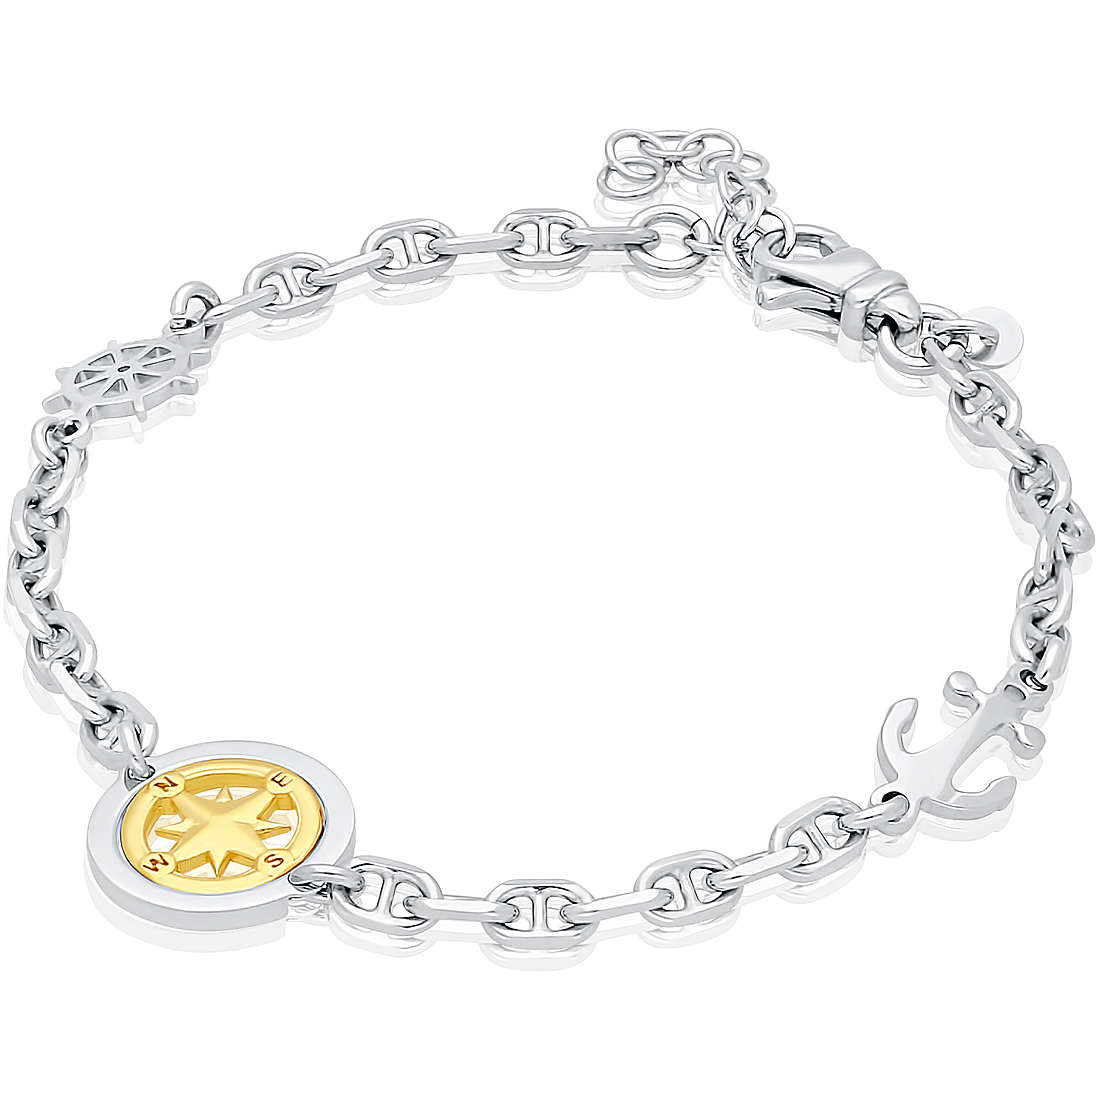 bracelet woman Chain 925 Silver jewel GioiaPura DV-24944229